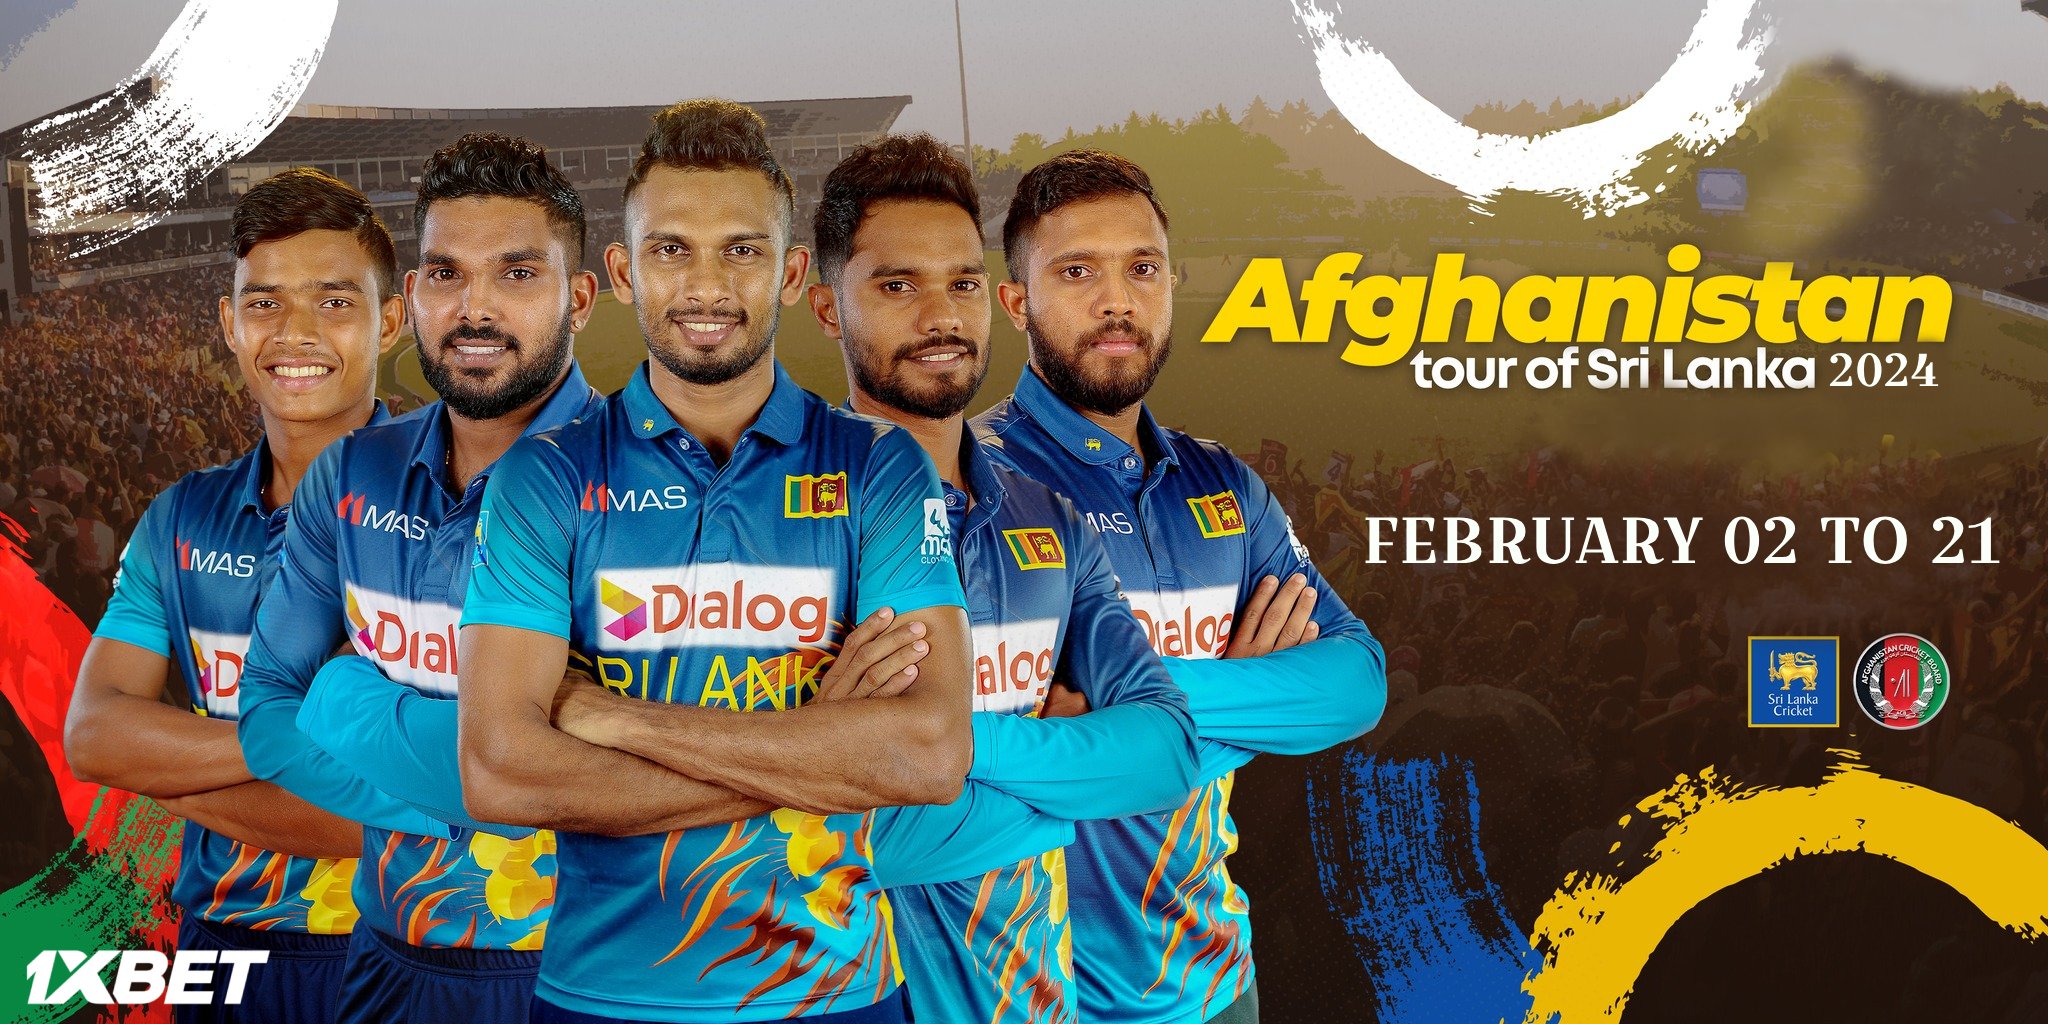 ශ්‍රී ලංකා – ඇෆ්ගනිස්තාන තරගාවලිය සදහා දින තීන්දුයි- Dates fixed for the Sri Lanka-Afghanistan series